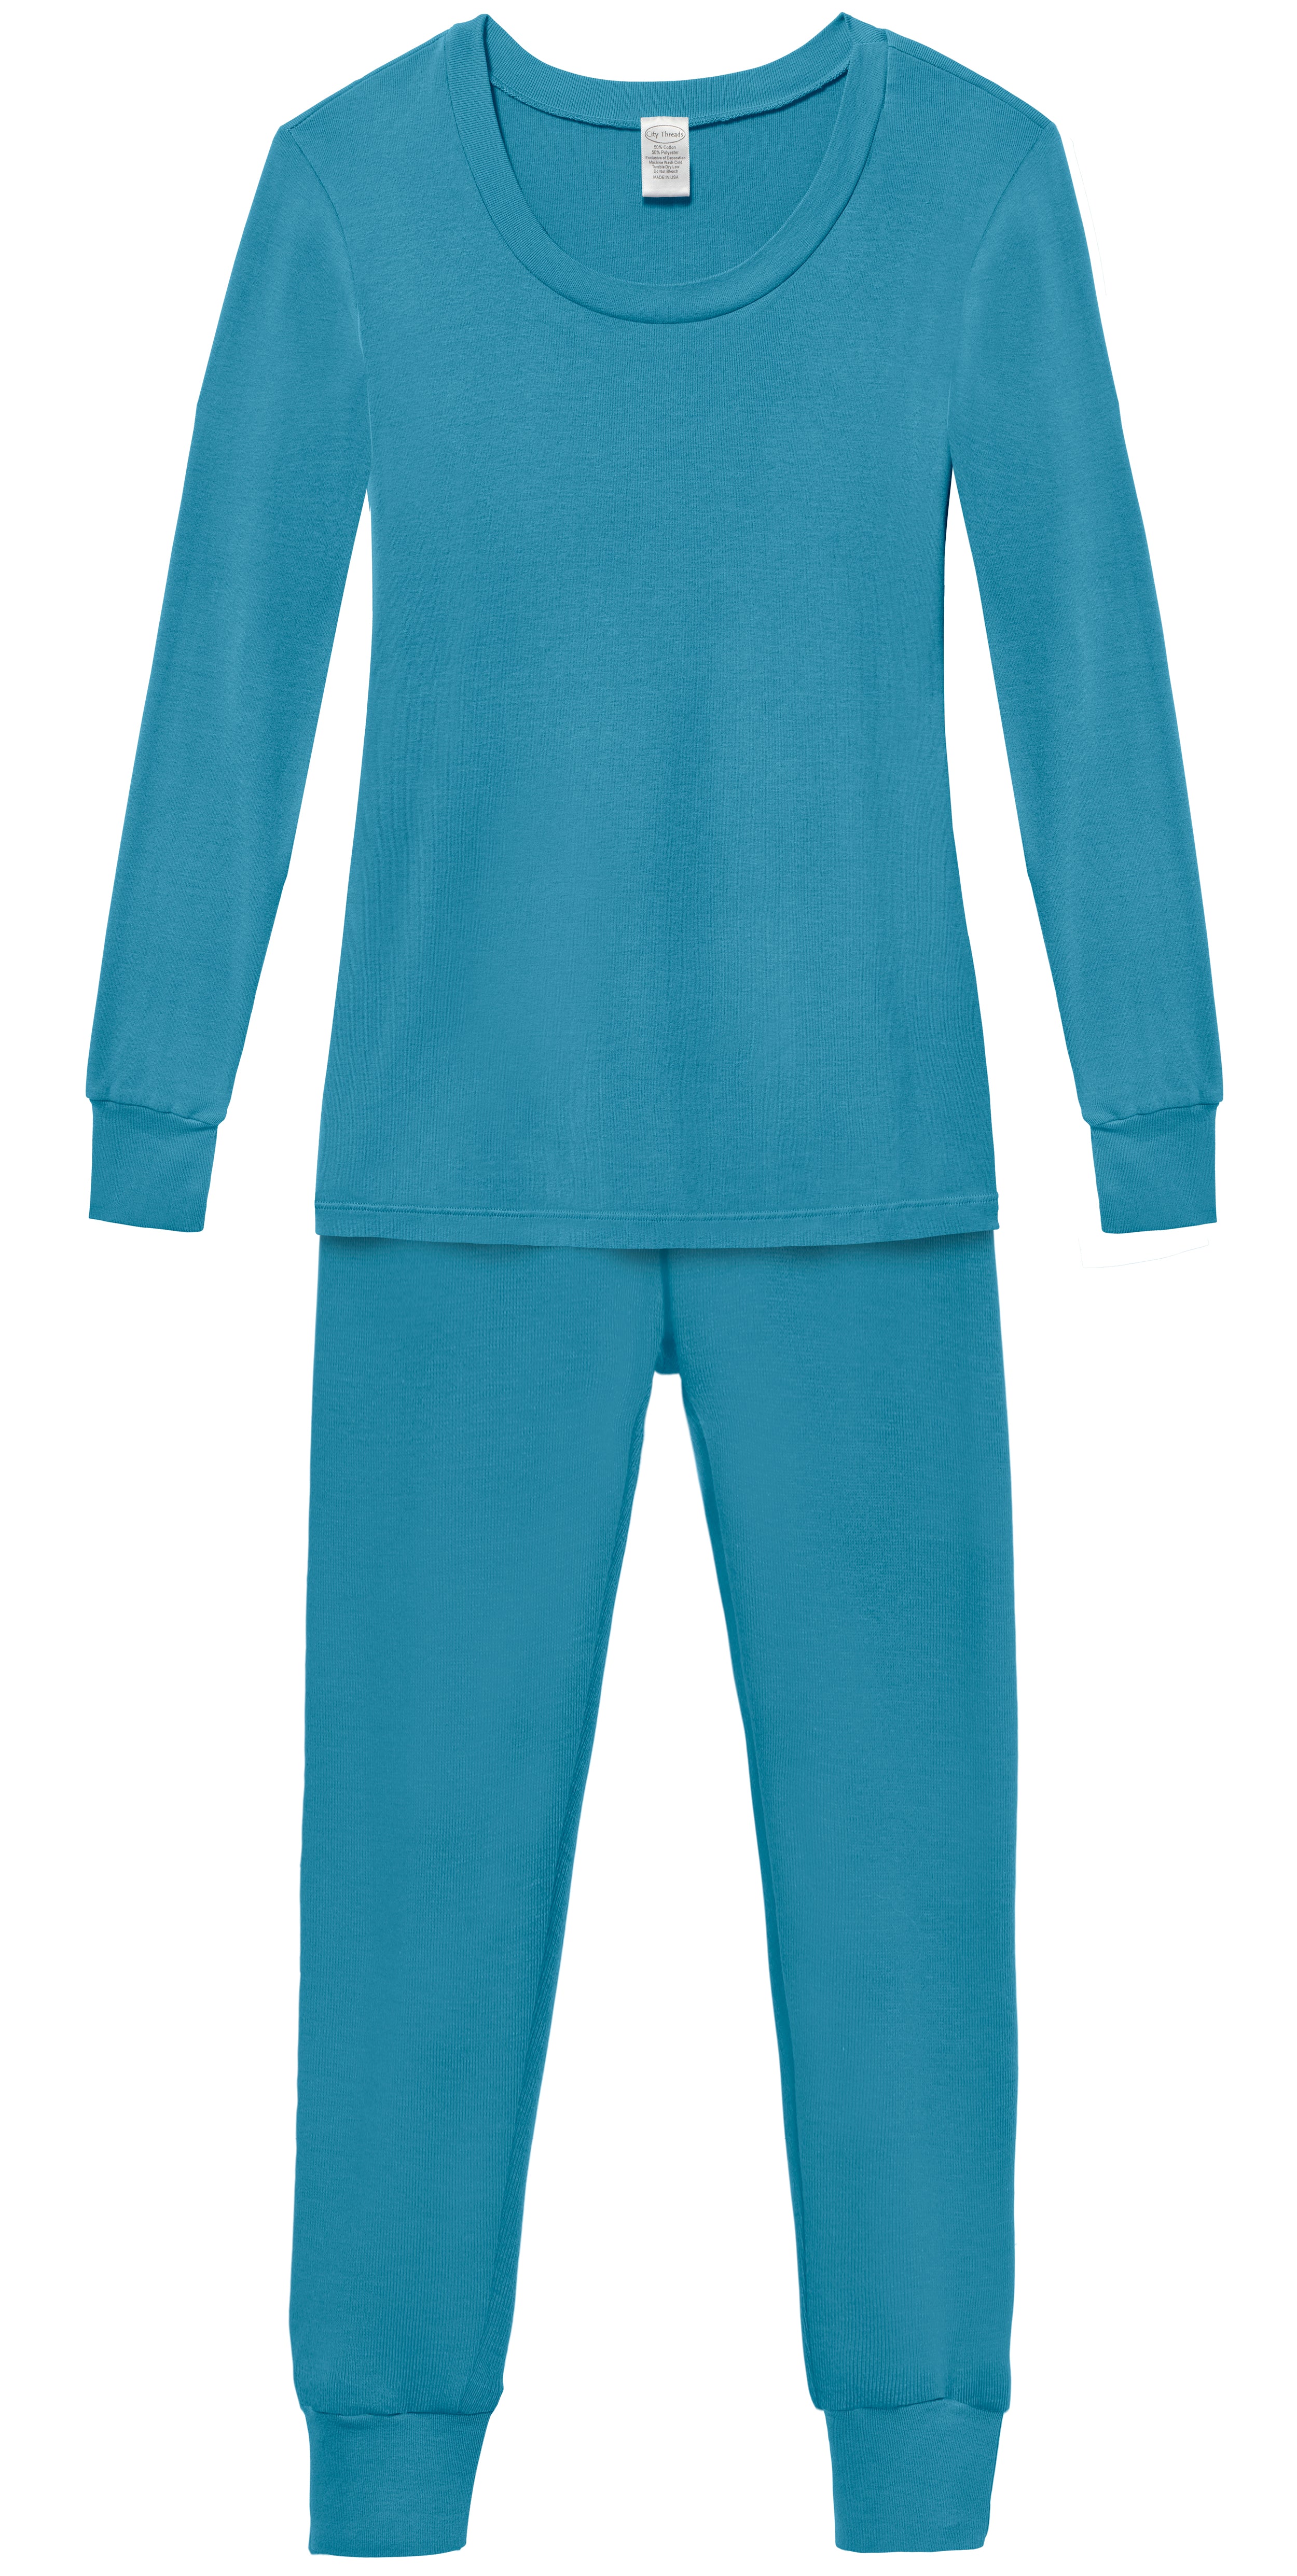 Children's Organic PJ Sets 2 piece sleepwear 100% cotton - City Threads USA